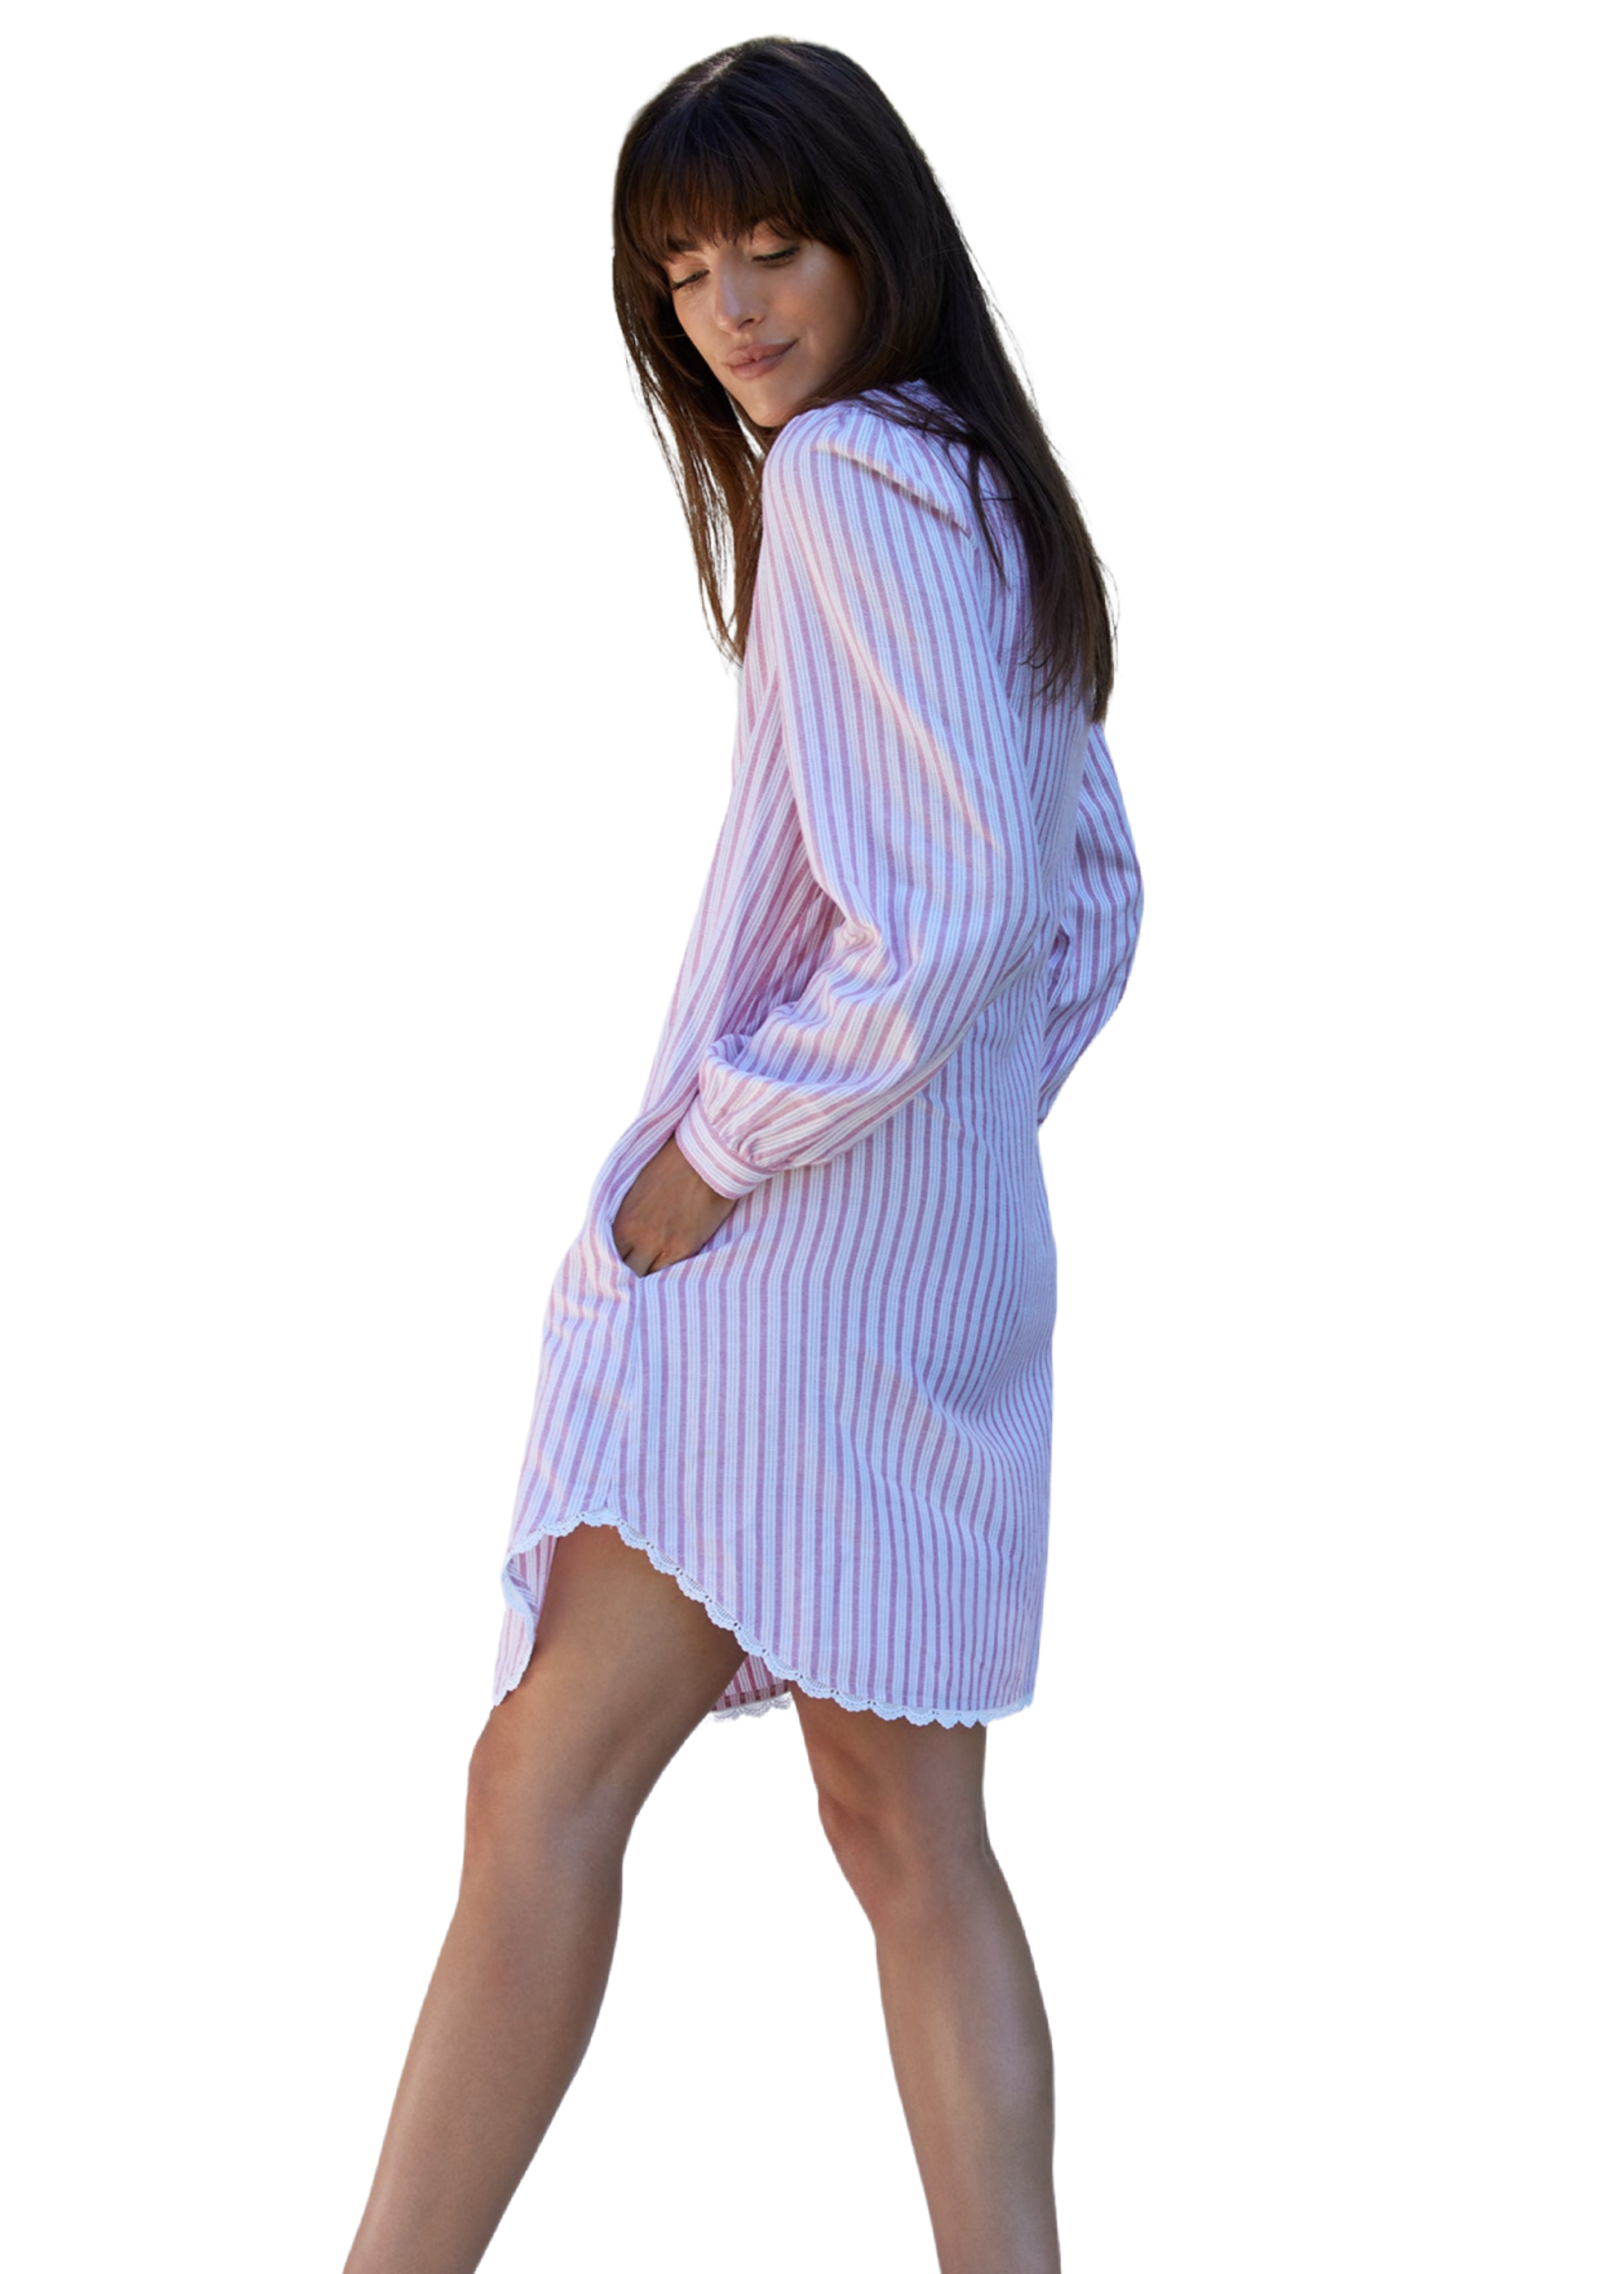 Eileen West Candy Stripe Light Flannel Shirtdress